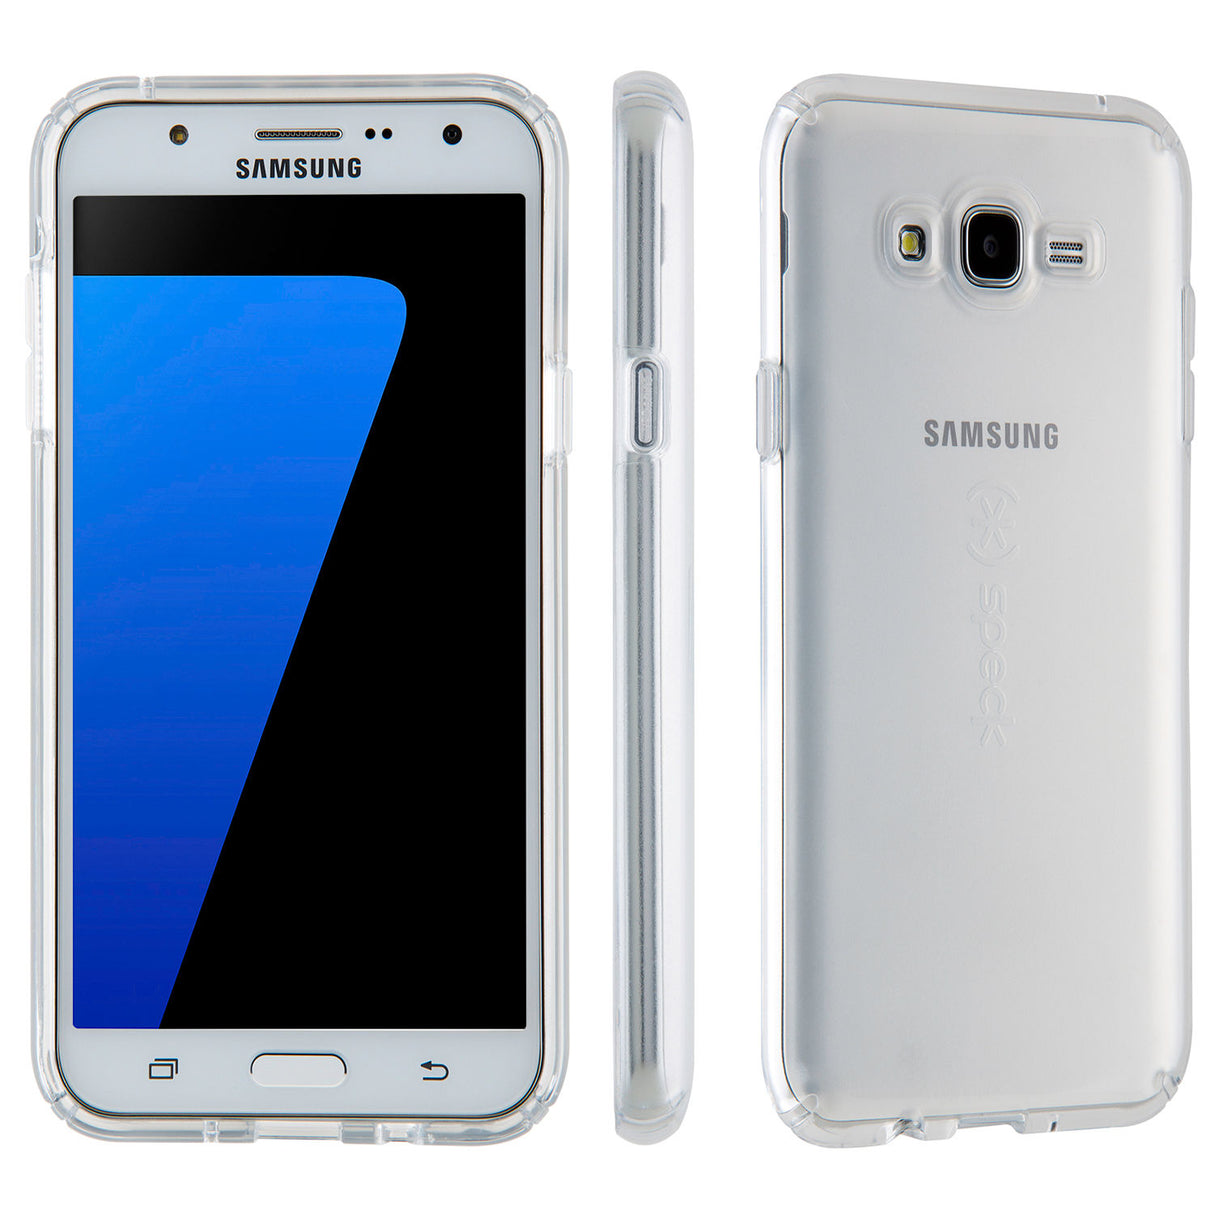 Samsung Galaxy J7 - 16 GB - Silver - Verizon - CDMA/GSM